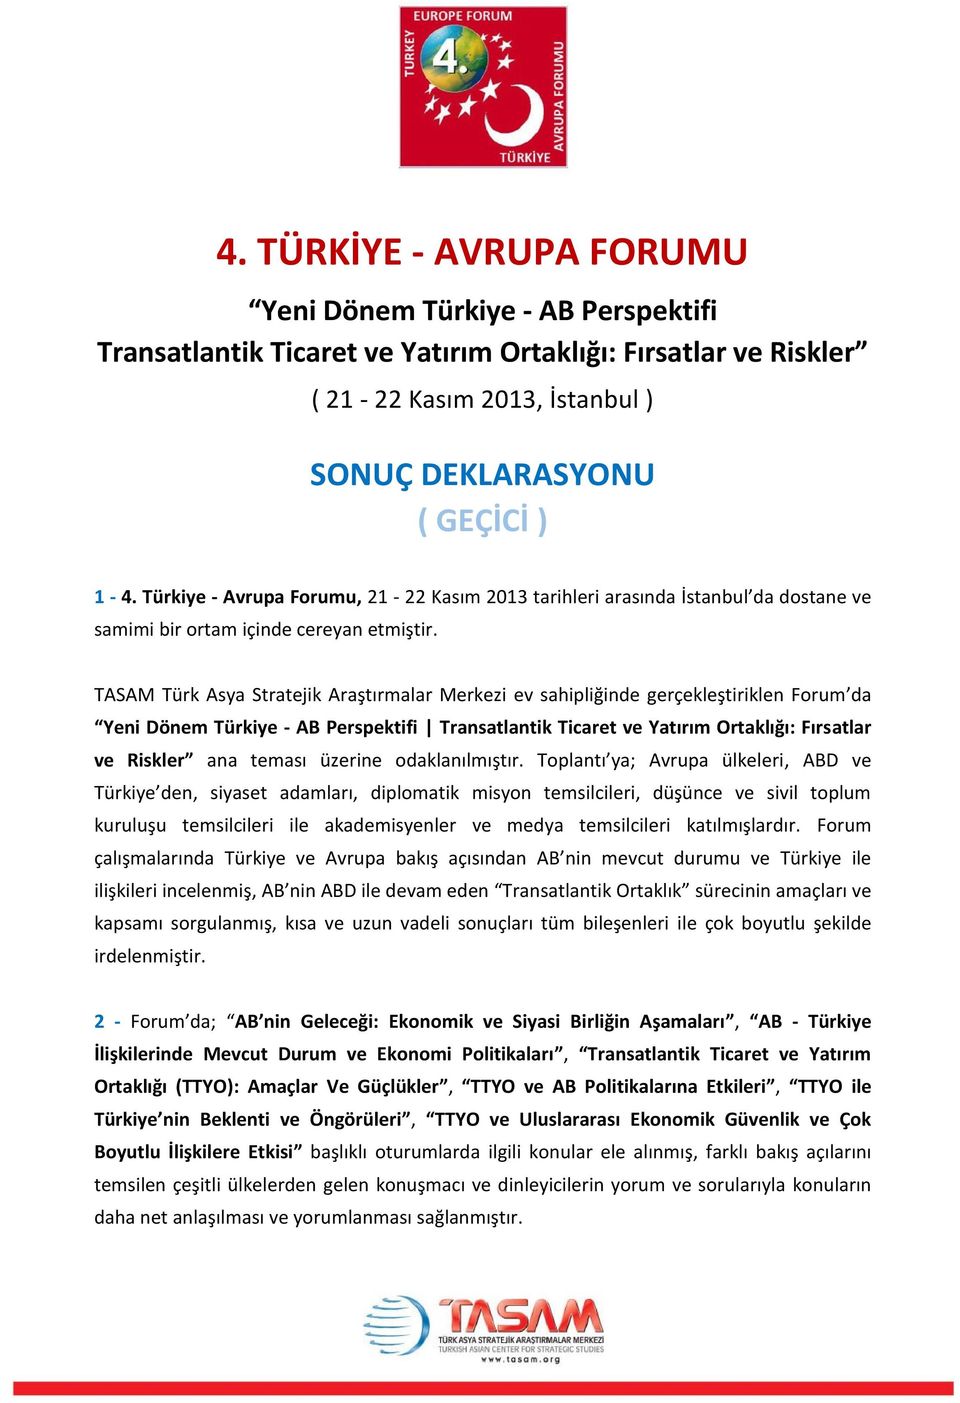 TASAM Türk Asya Stratejik Araştırmalar Merkezi ev sahipliğinde gerçekleştiriklen Forum da Yeni Dönem Türkiye - AB Perspektifi Transatlantik Ticaret ve Yatırım Ortaklığı: Fırsatlar ve Riskler ana